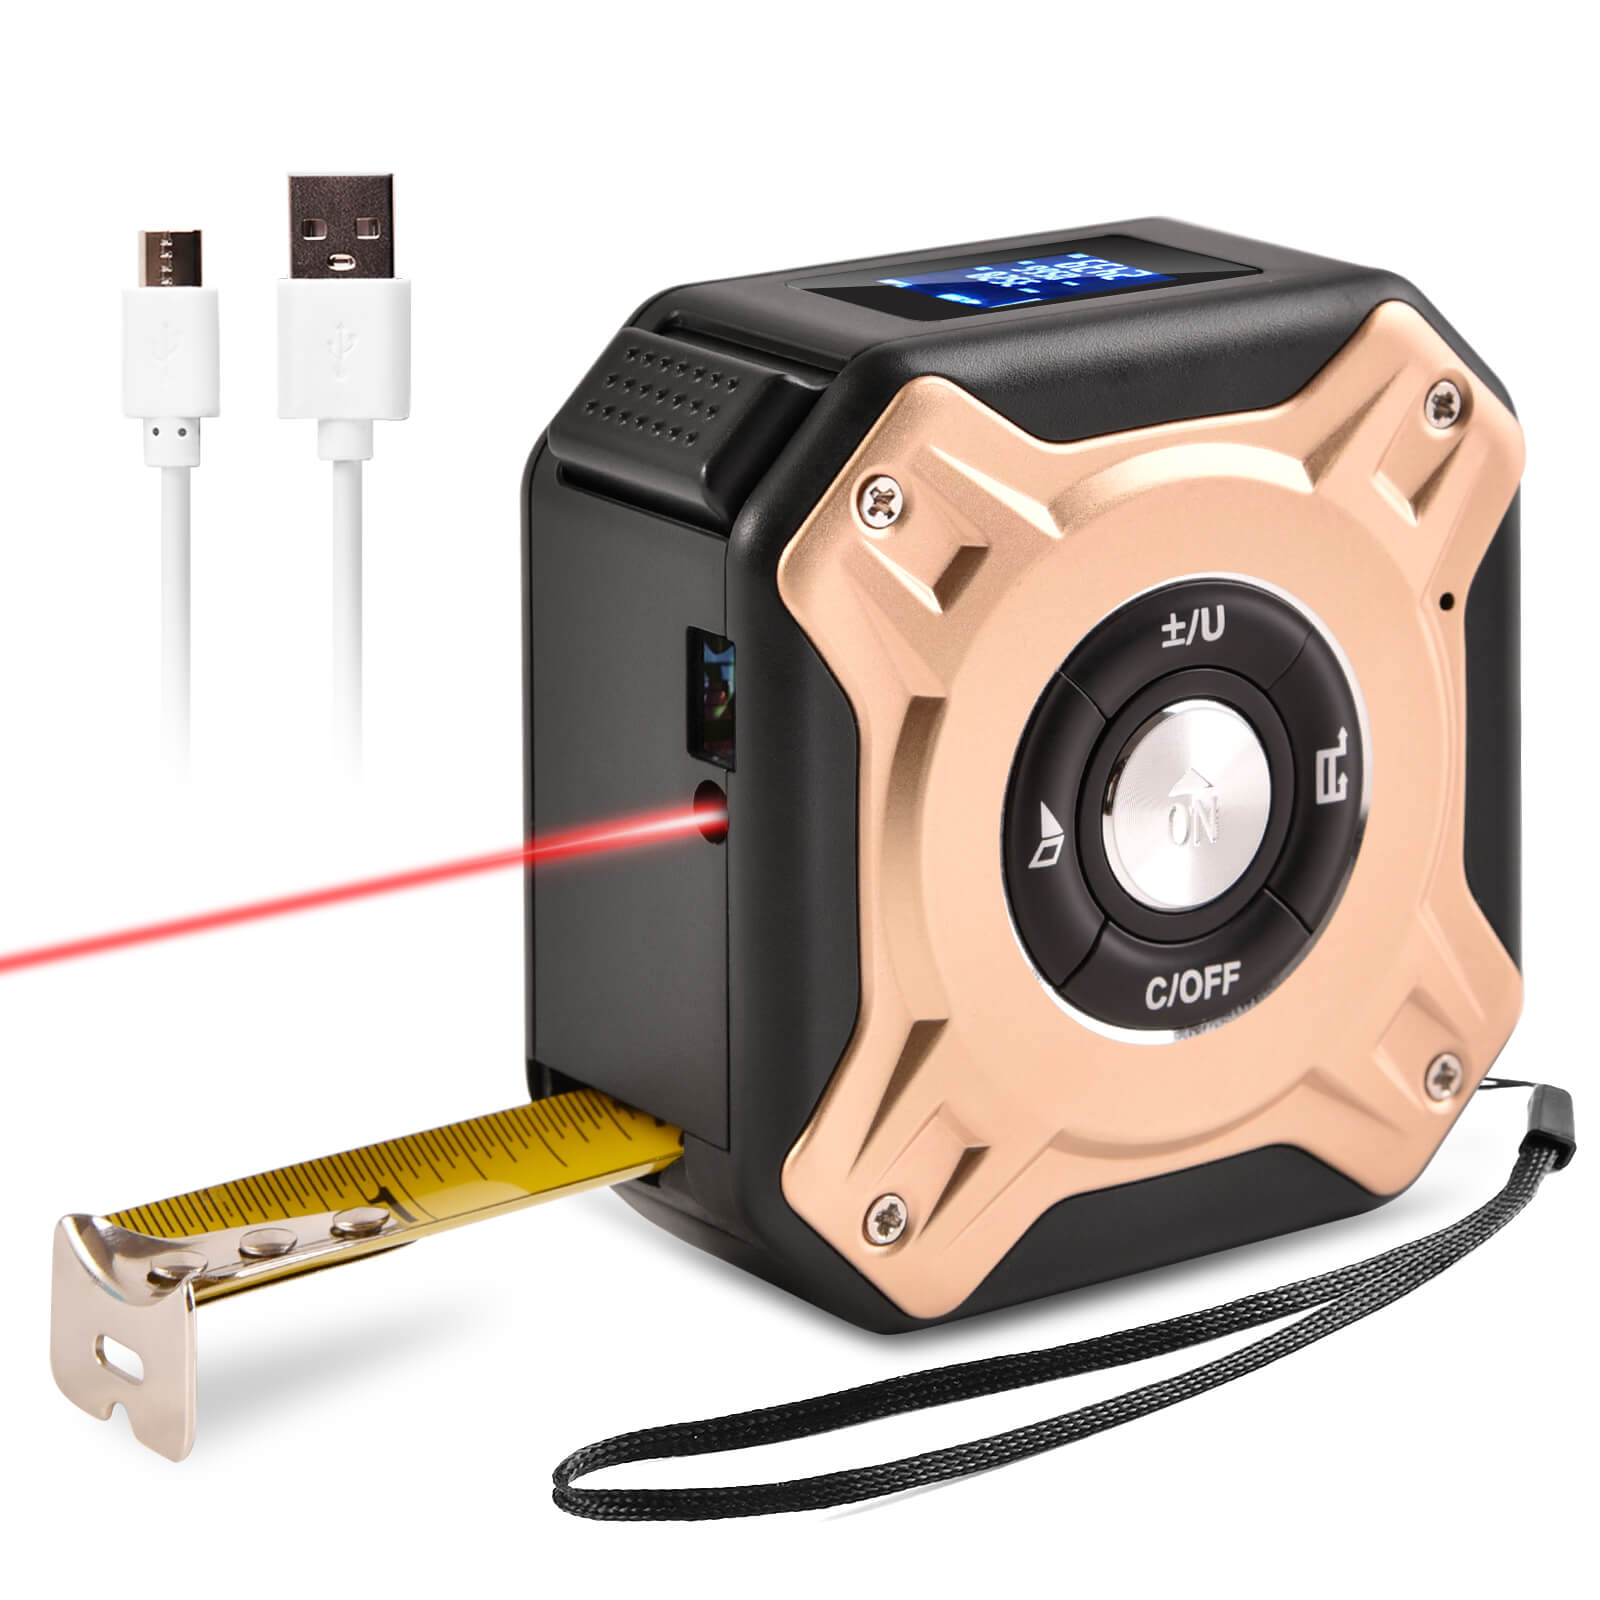 3-in-1 Digital Laser Tape Measure - 40m Range, 5m Tape, LED Display, Supplier